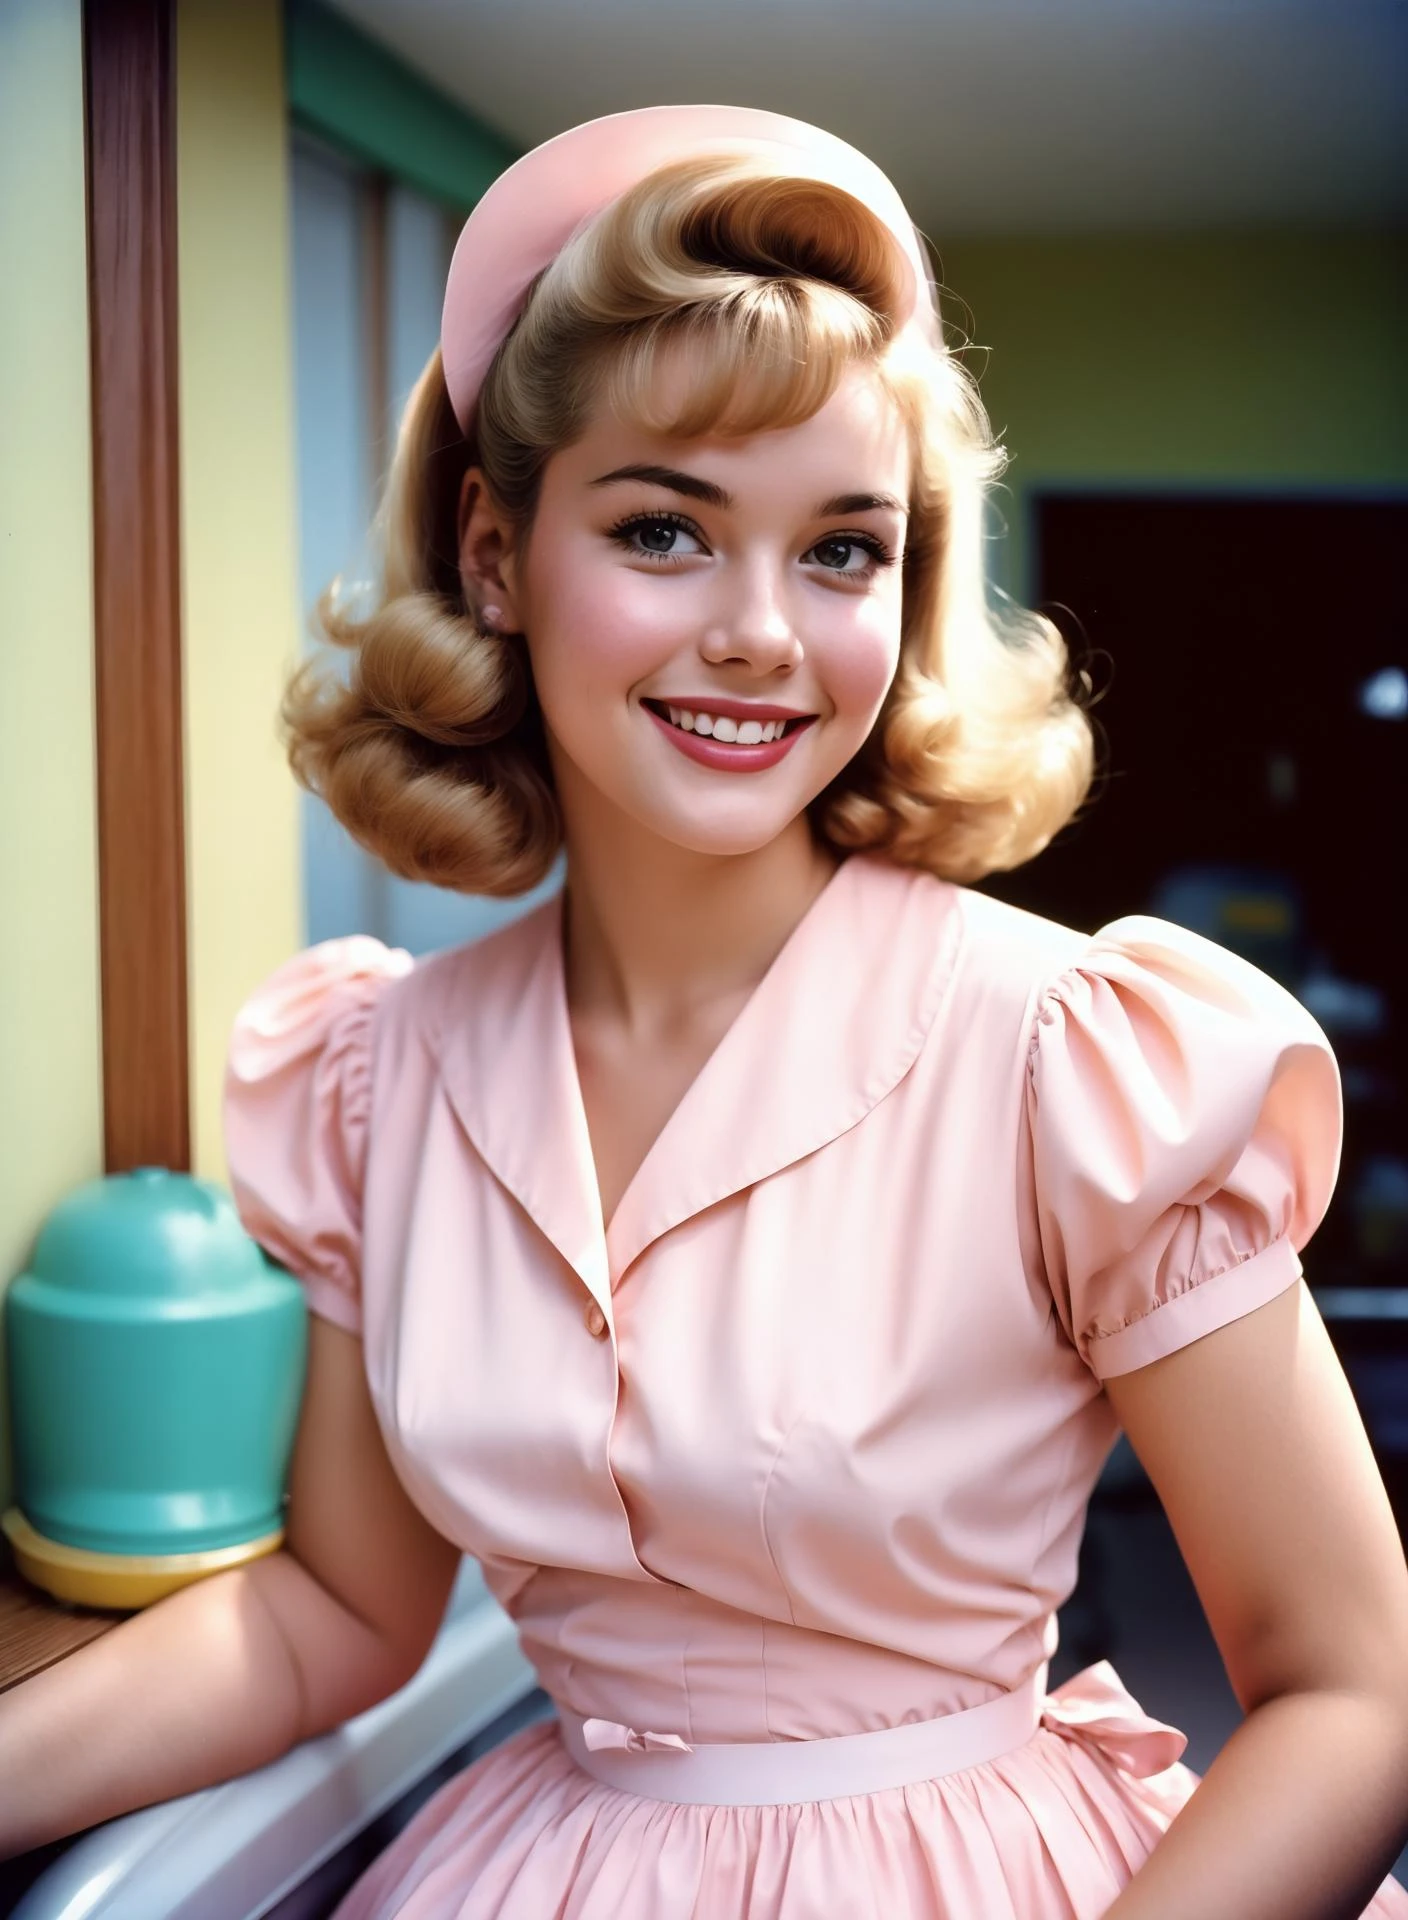 一個美麗的年輕家庭主婦的肖像, 微笑著, 穿著淡粉色連身裙, 照片是 20 世紀 50 年代用模擬相機拍攝的. 人們穿著 50 年代傳統風格的衣服, 留著 50 年代傳統髮型的人, 威廉·埃格爾斯頓攝, 50 年代的樣子, 非常詳細, 柔和的顏色略有褪色, 稍微模糊, 略帶顆粒感, 胶片摄影